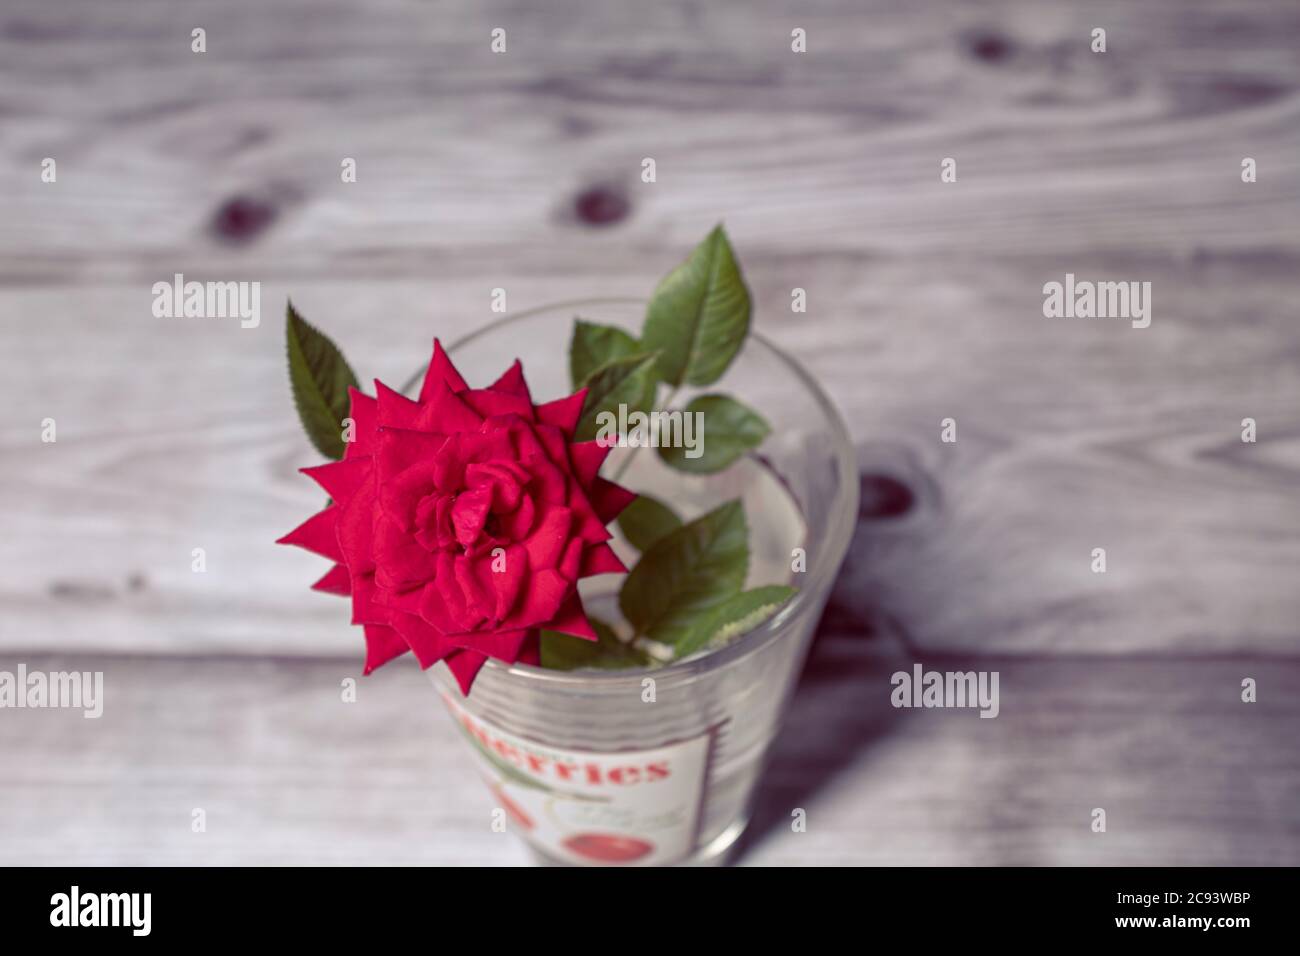 Petite fleur de rose rouge en fleur sur une scène intérieure avec pot de vase en verre sur une planche en bois Banque D'Images